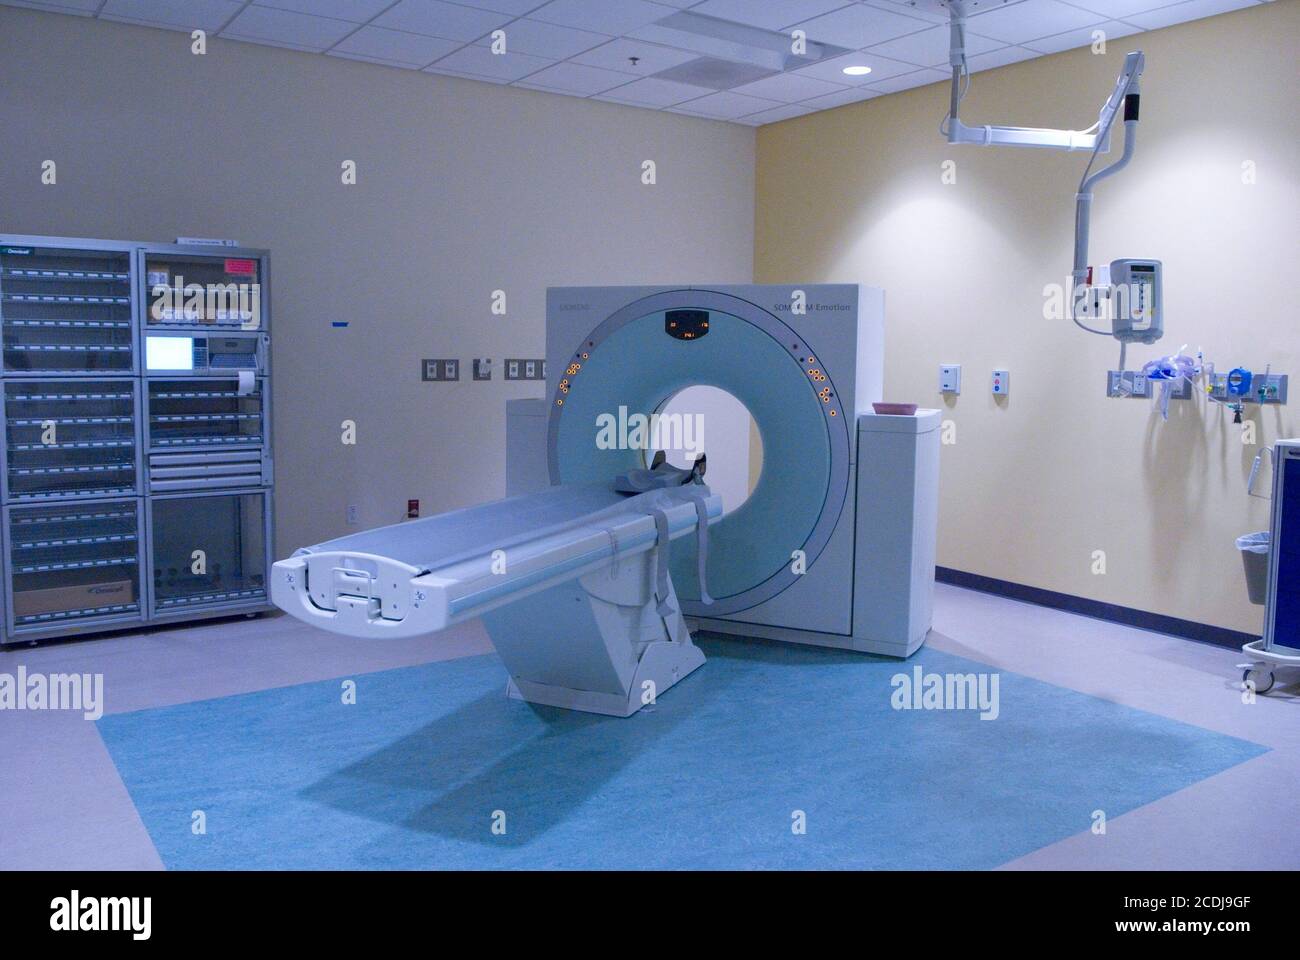 Austin, TX 26 juin 2007 : appareil d'imagerie par résonance magnétique (IRM) dans la salle d'urgence du centre médical pour enfants Dell, un hôpital de pointe de 500,000 pieds carrés avec 24 lits de soins intensifs et 170 chambres de patients. ©Bob Daemmrich Banque D'Images